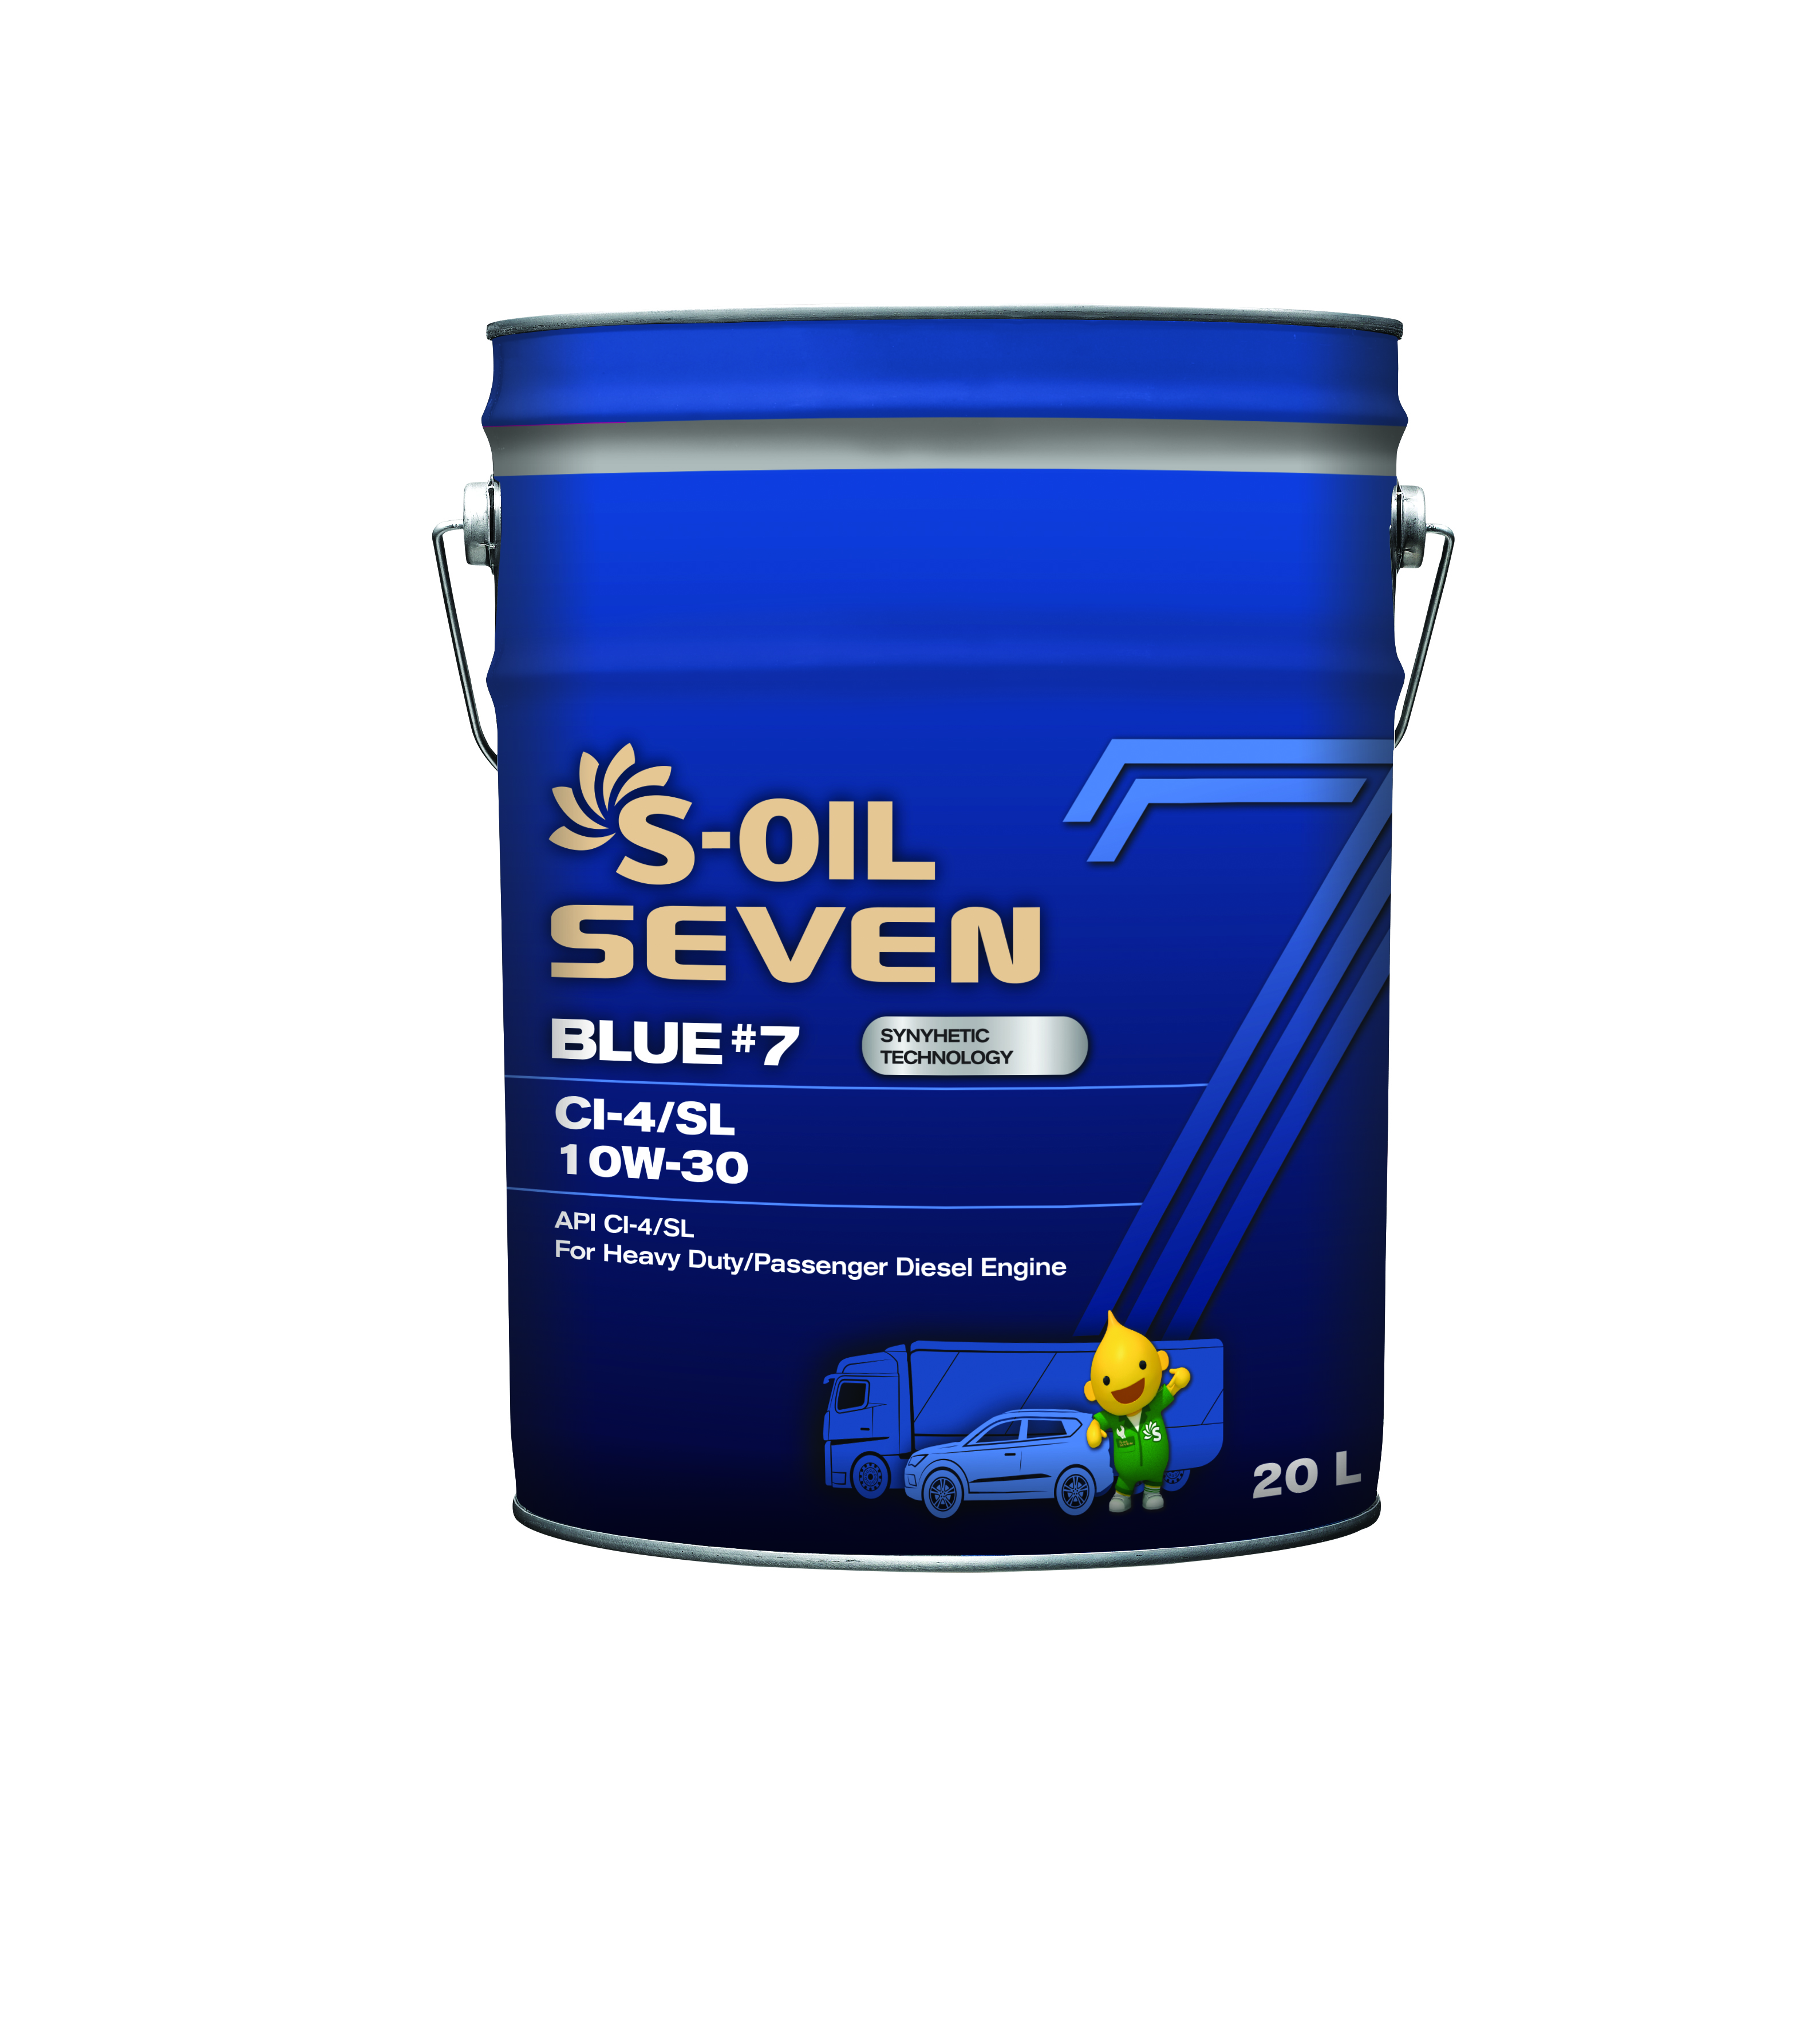 Масло Моторное S-OIL 7 BLUE #7 CI-4/SL 10W30 (20л), синтетика